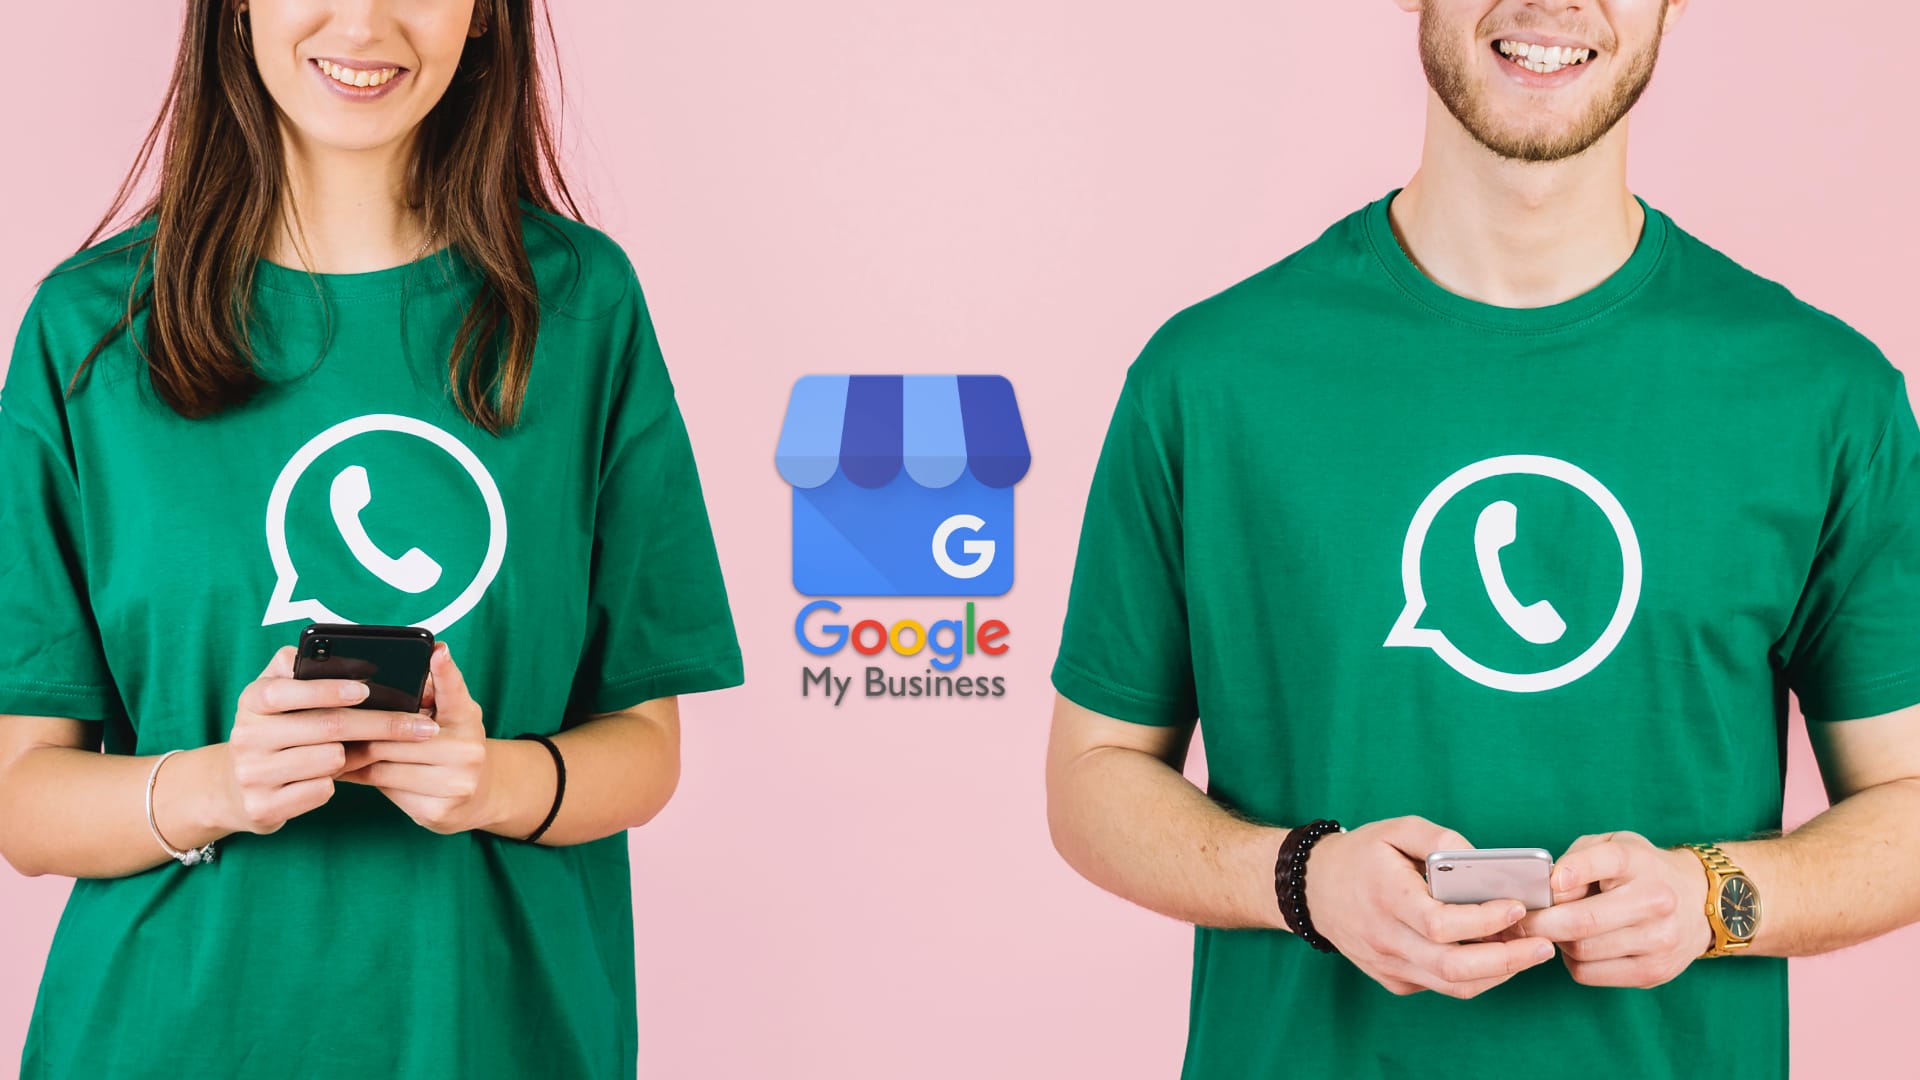 Nuova integrazione di WhatsApp e SMS per i profili Google Business